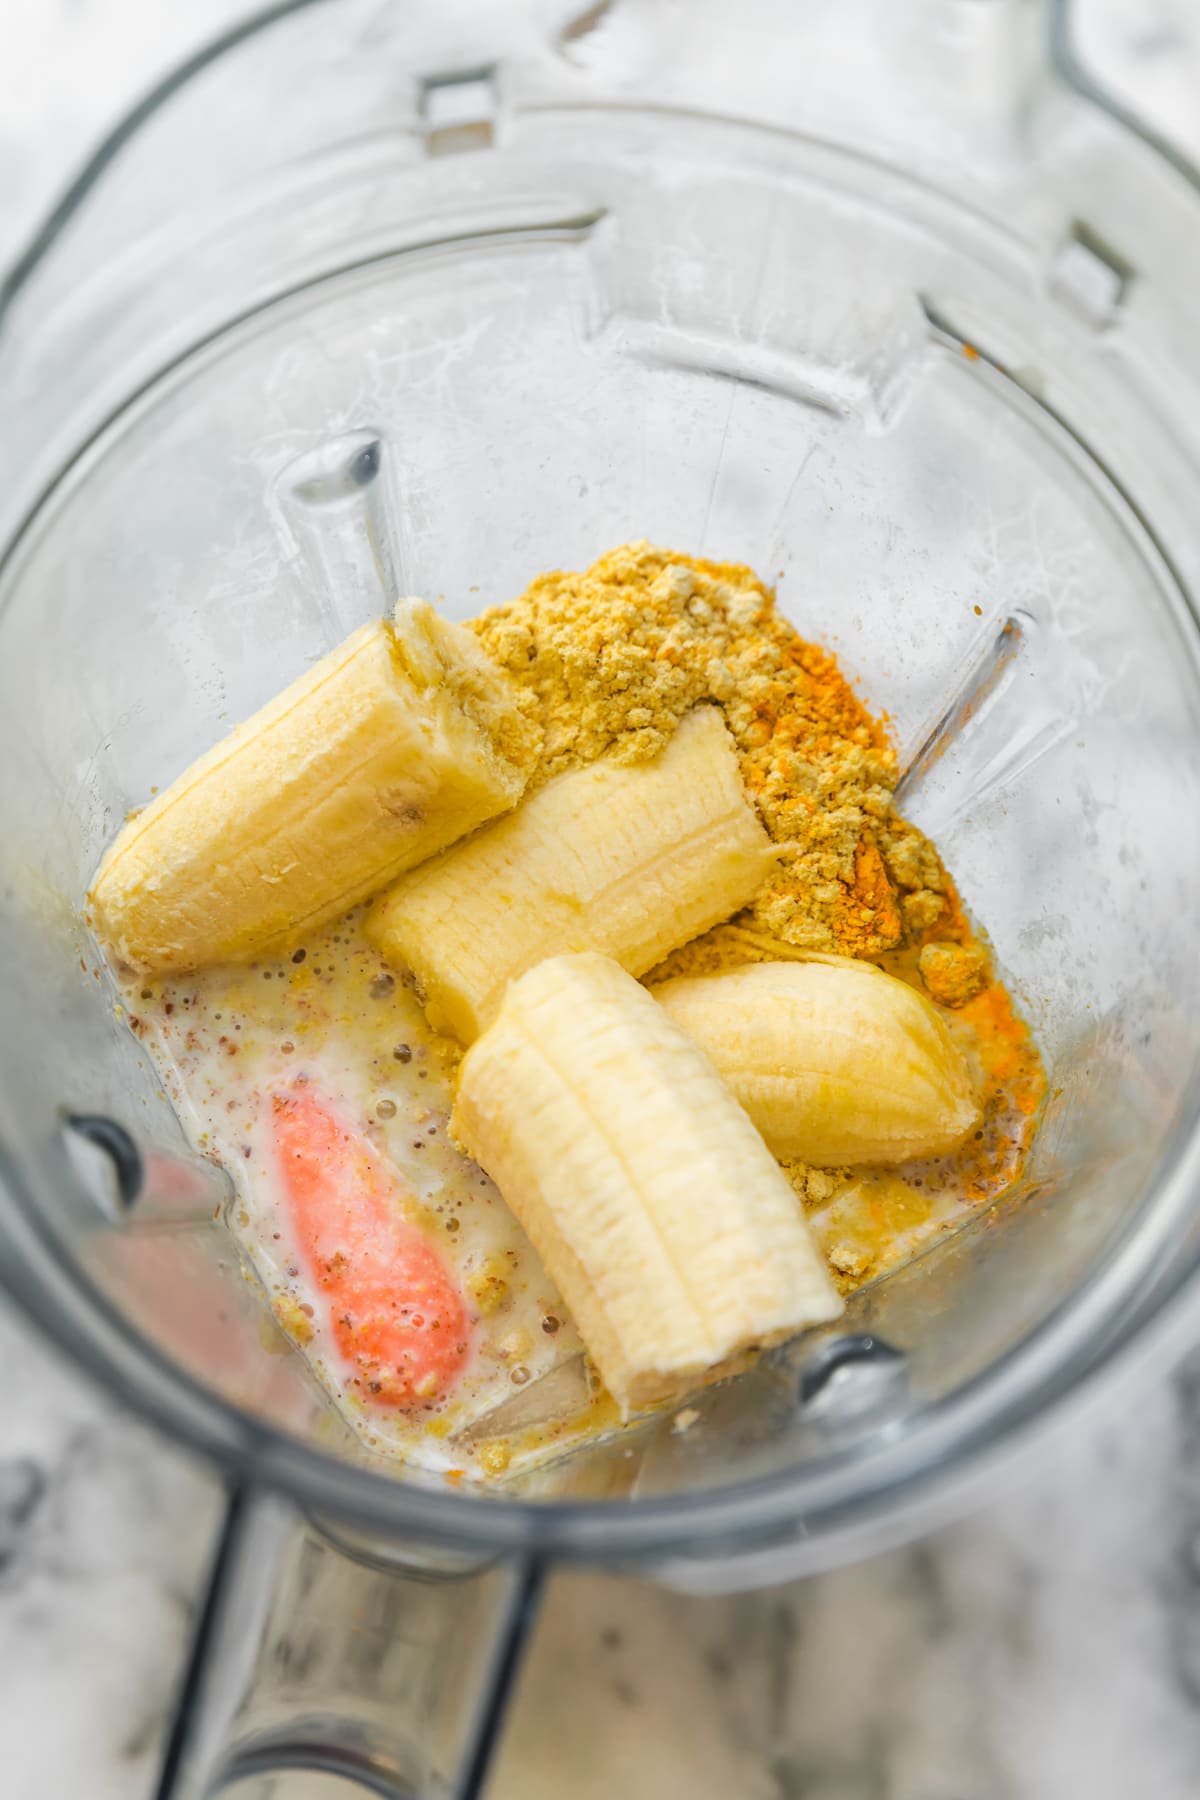 Cenoura, banana, proteína em pó, linhaça e leite de amêndoa